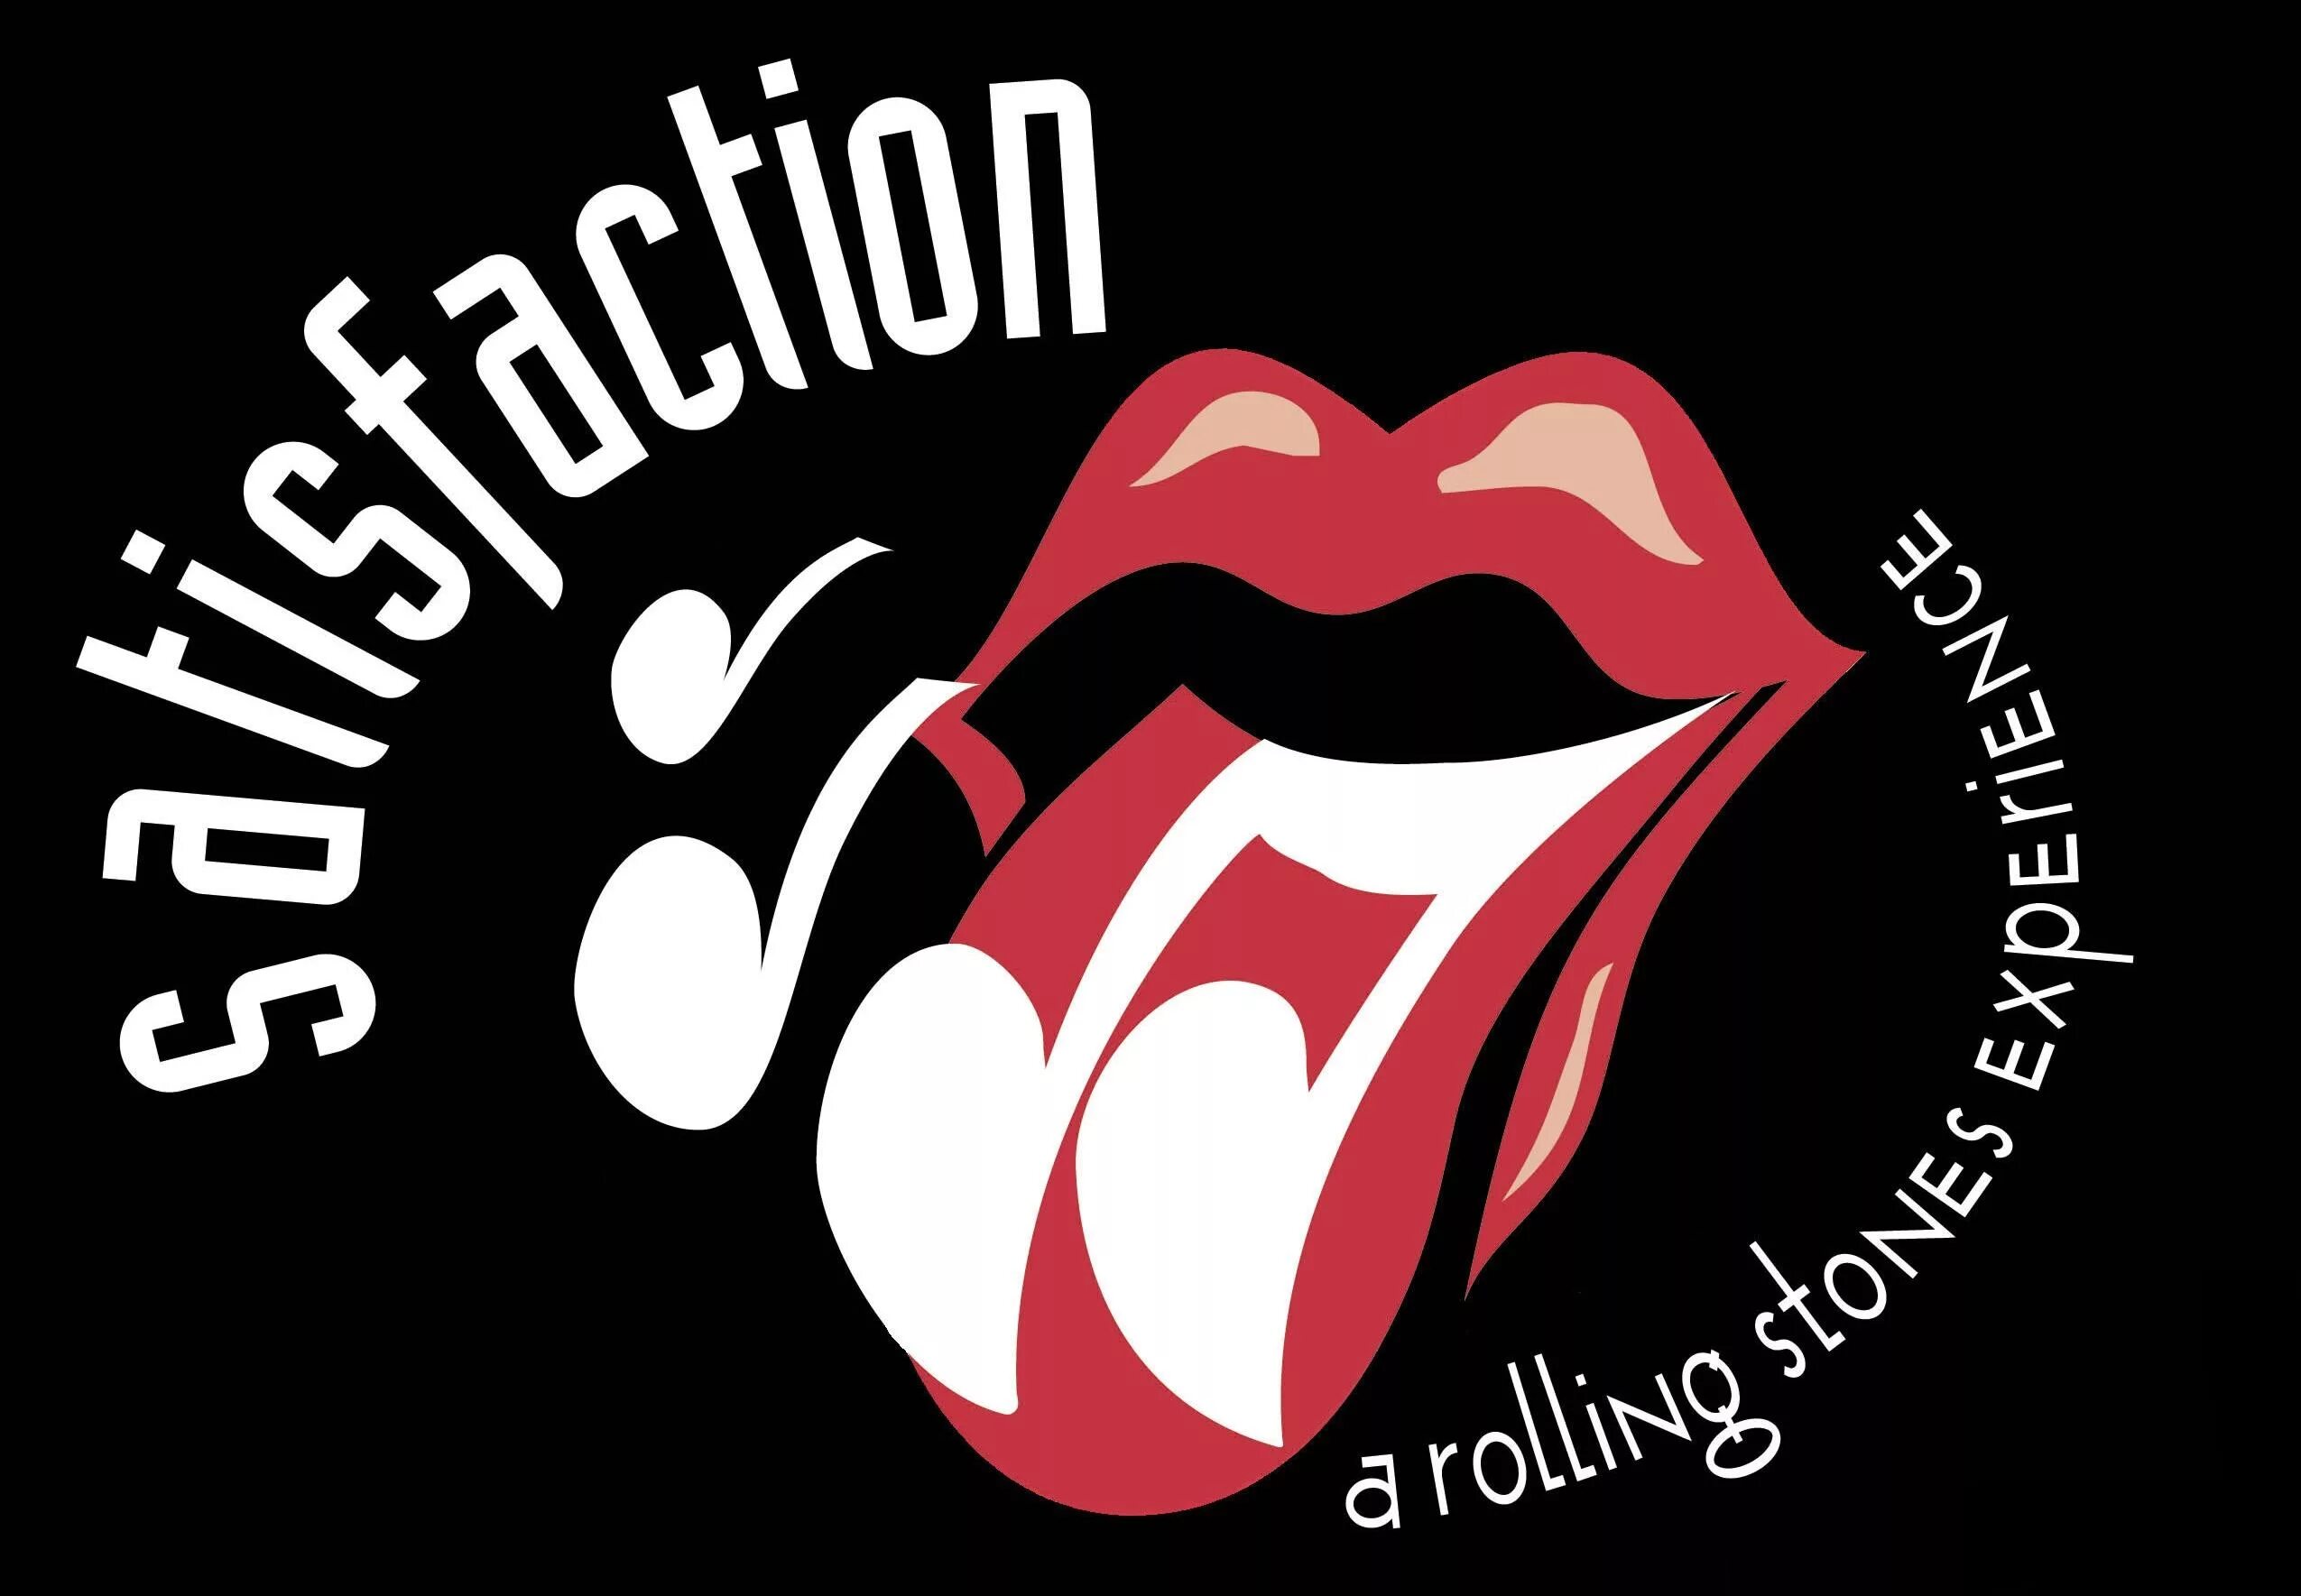 Rolling stones get. The Rolling Stones. Rolling Stones картинки. Rolling Stones эмблема. Роллинг стоунз satisfaction.